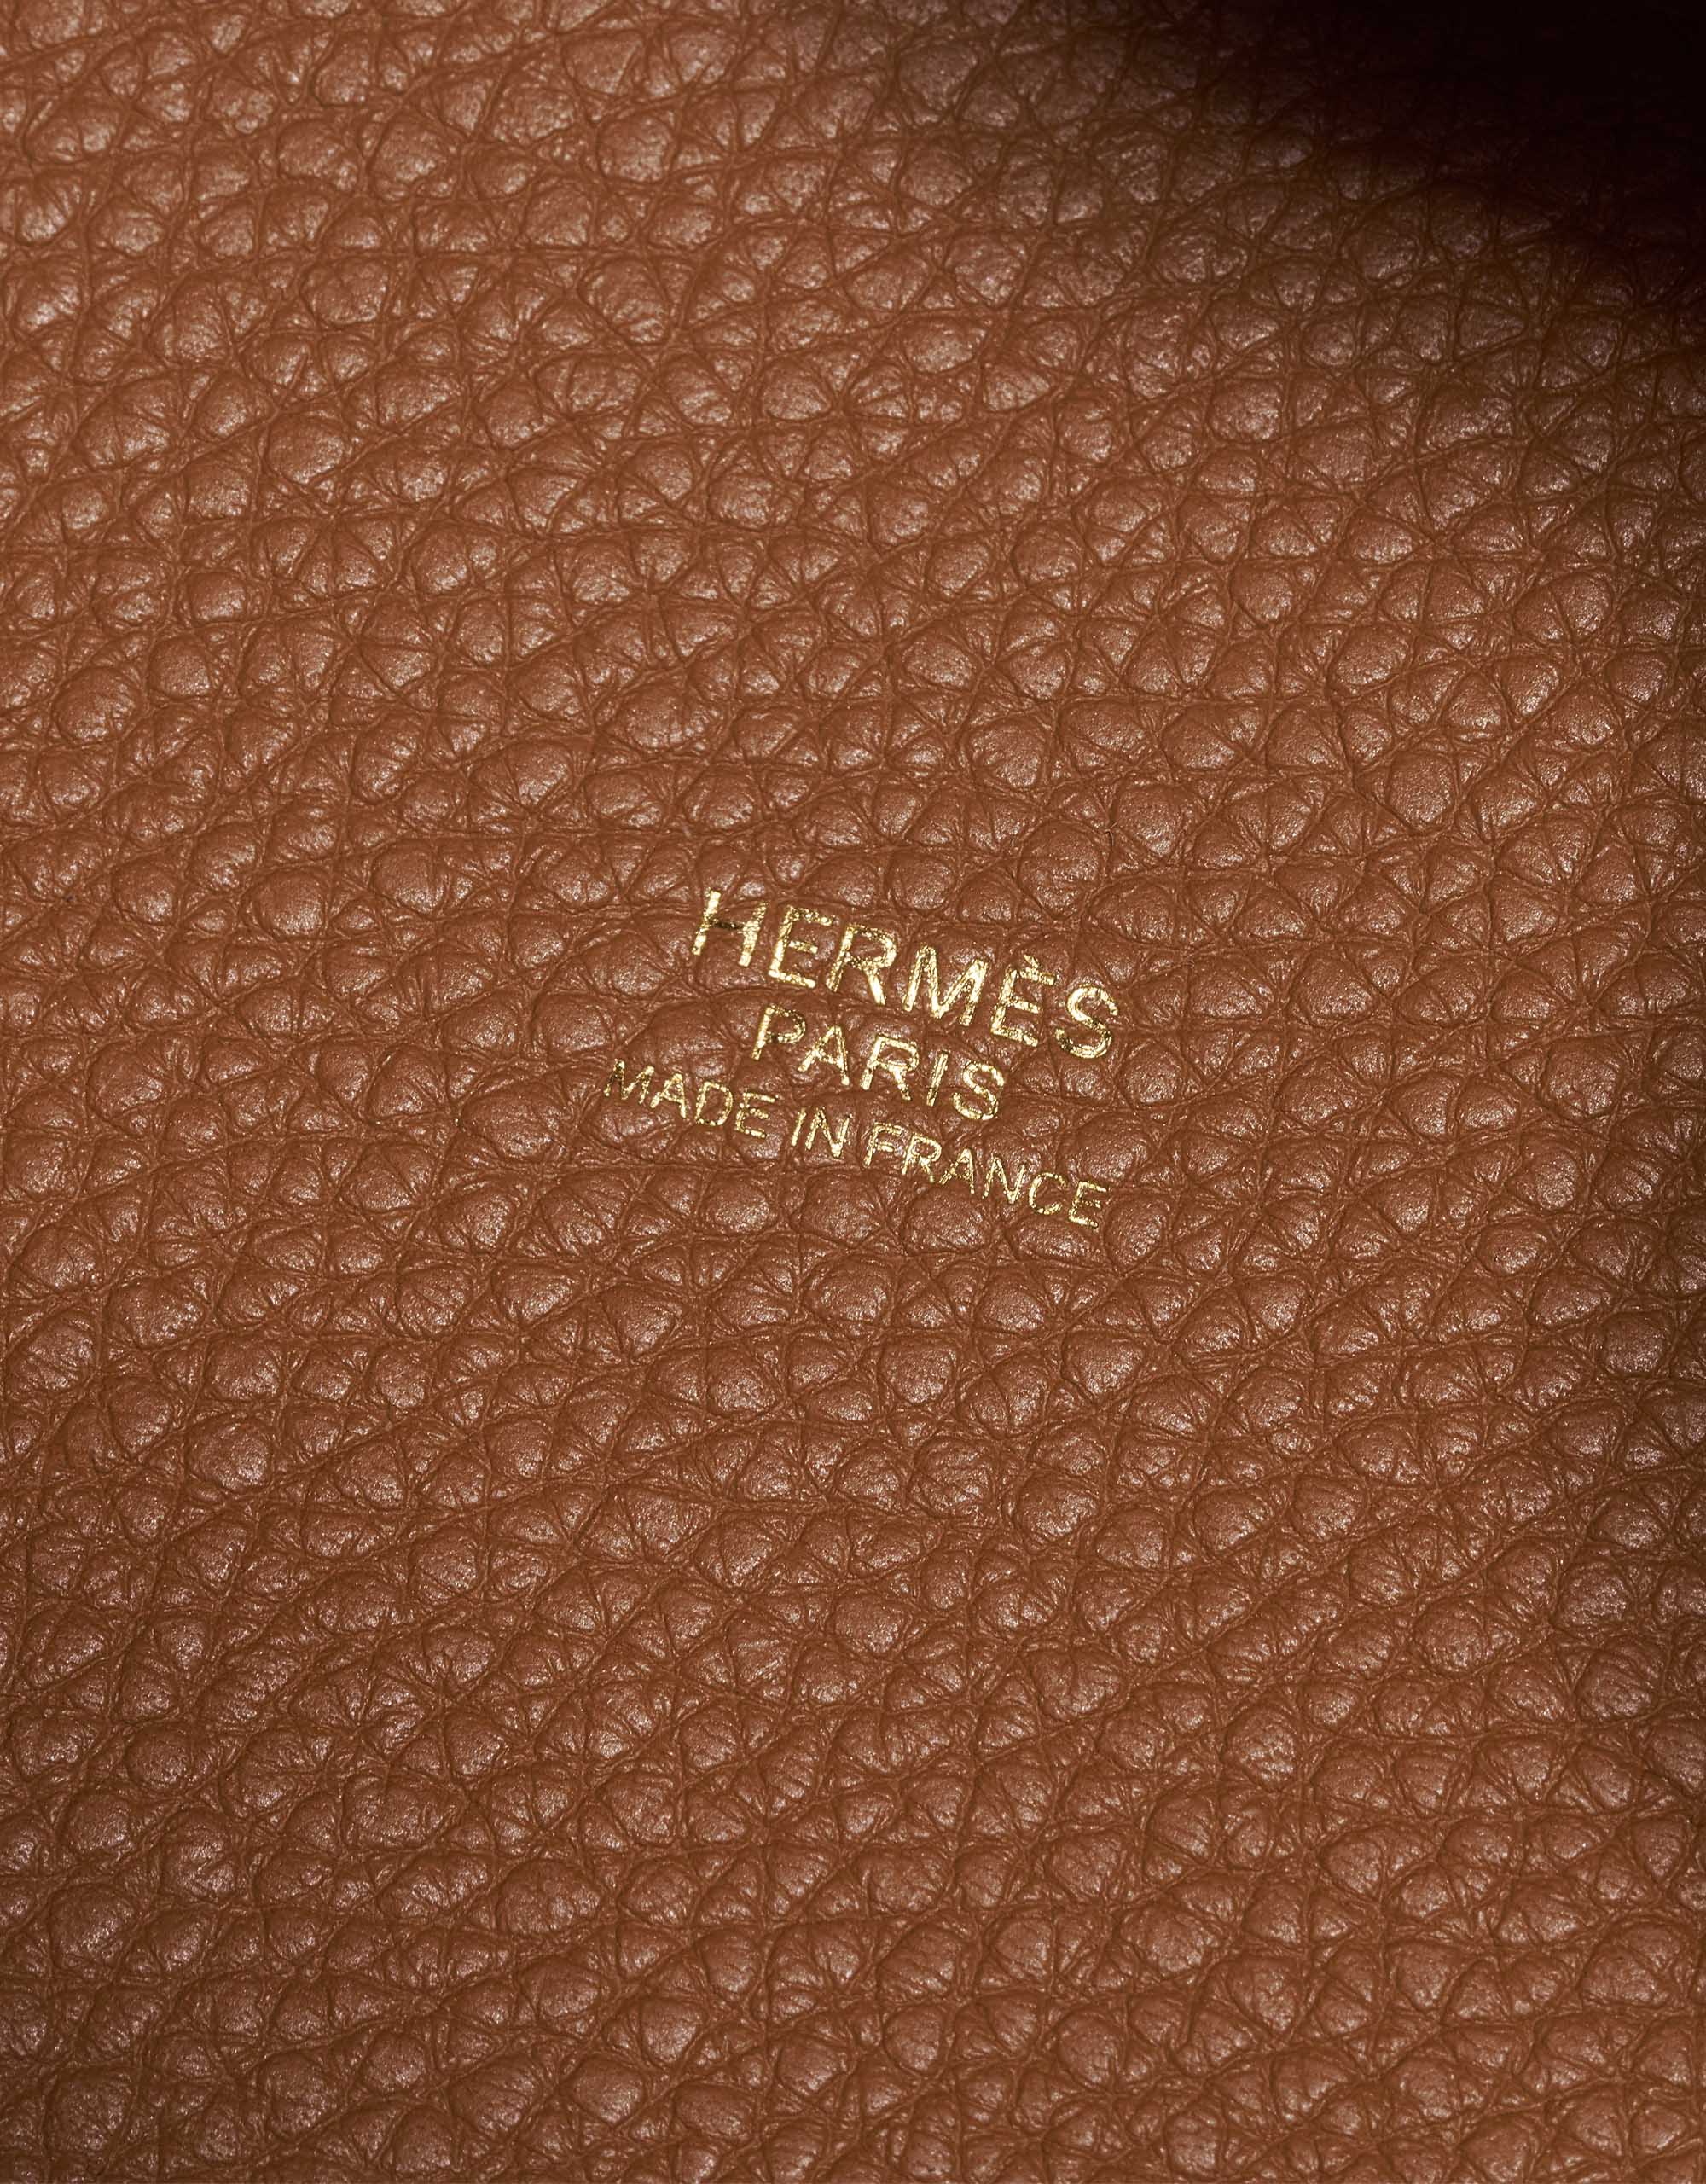 Gebrauchte Hermès Tasche Picotin 18 Taurillon Clemence Gold Braun Innenseite | Verkaufen Sie Ihre Designer-Tasche auf Saclab.com